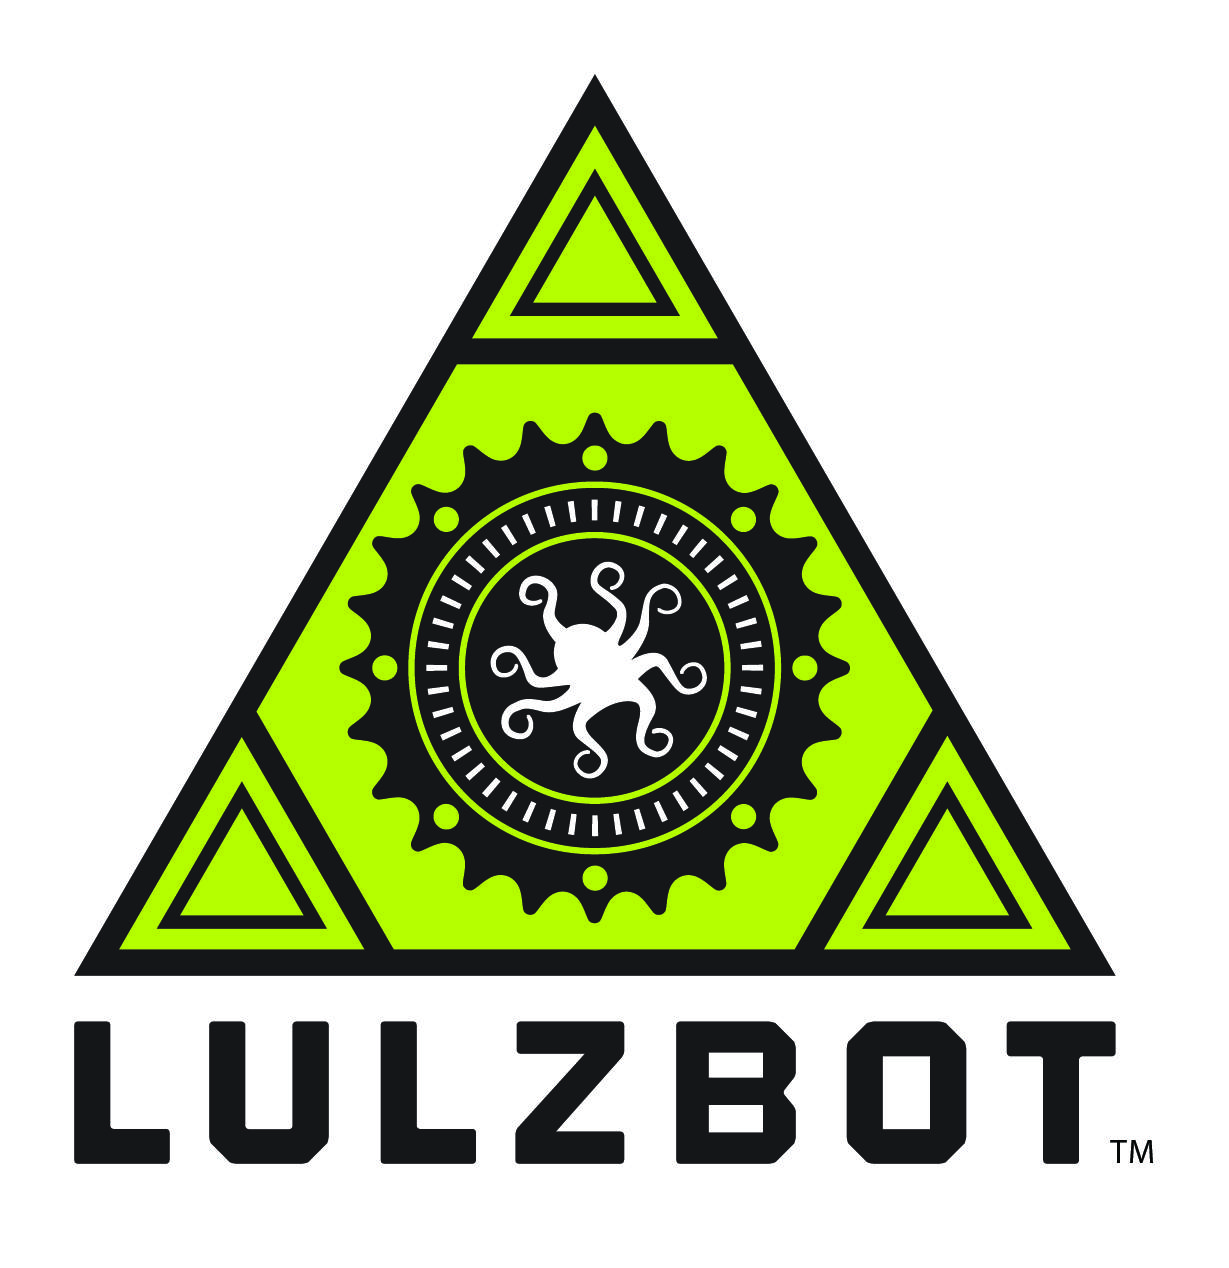 Resultado de imagem para lulzbot logo